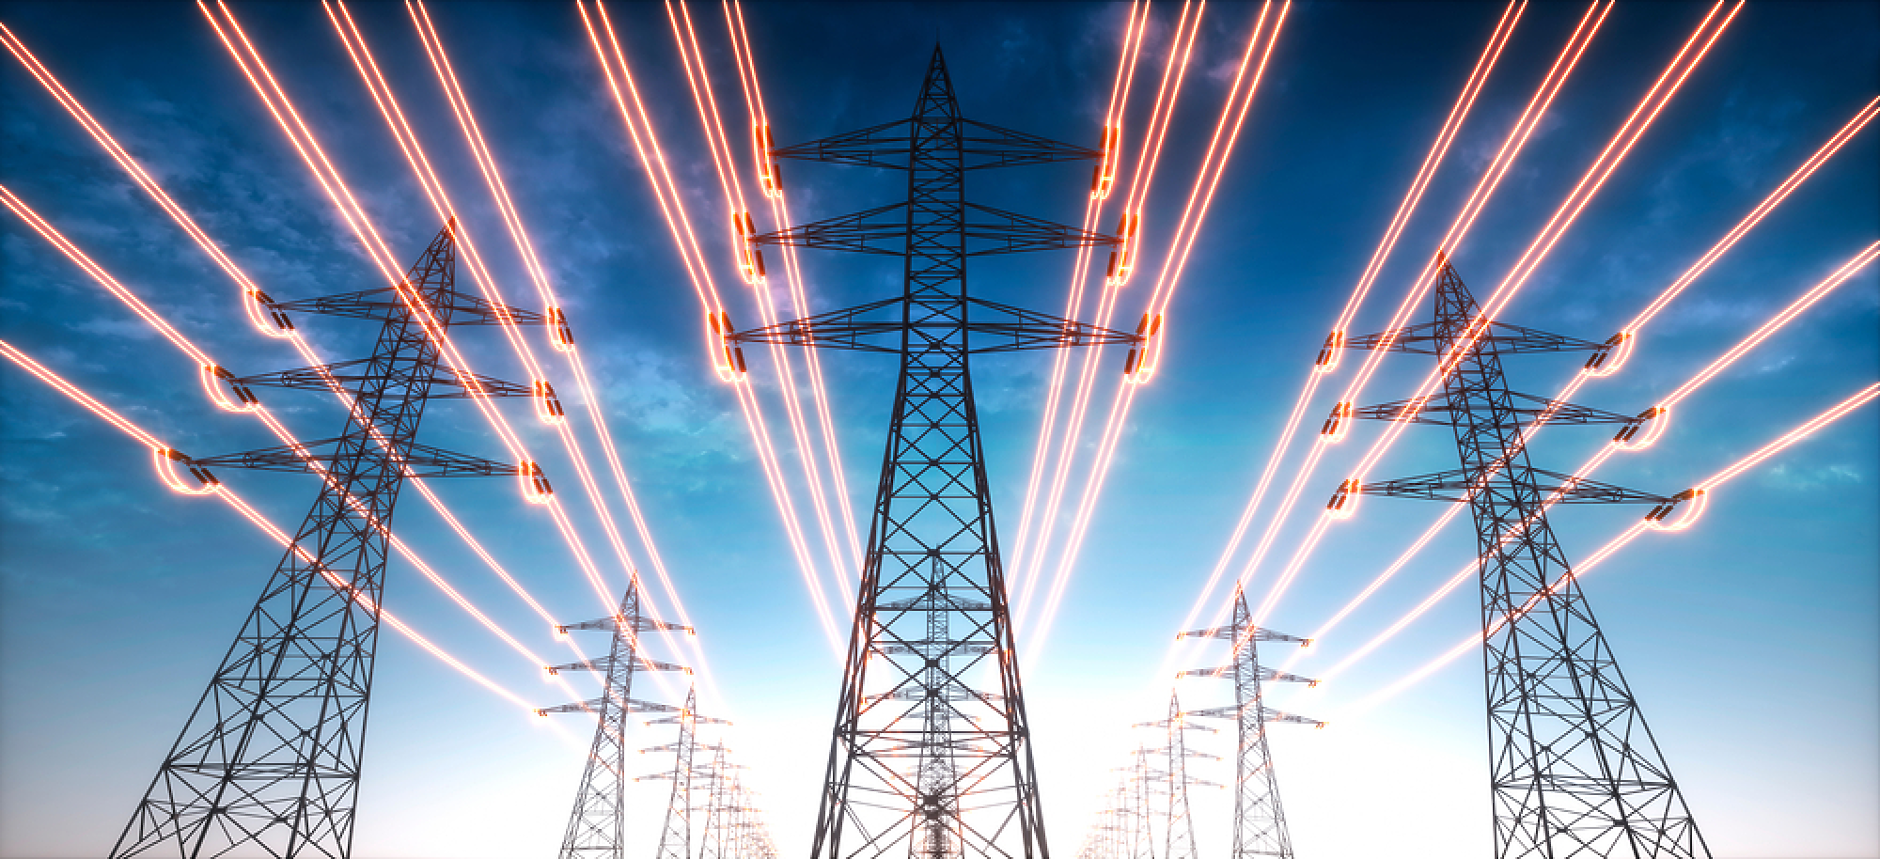 ЕП прие реформа за пазара на електроенергия, която ще защитава потребителите от нестабилни цени 